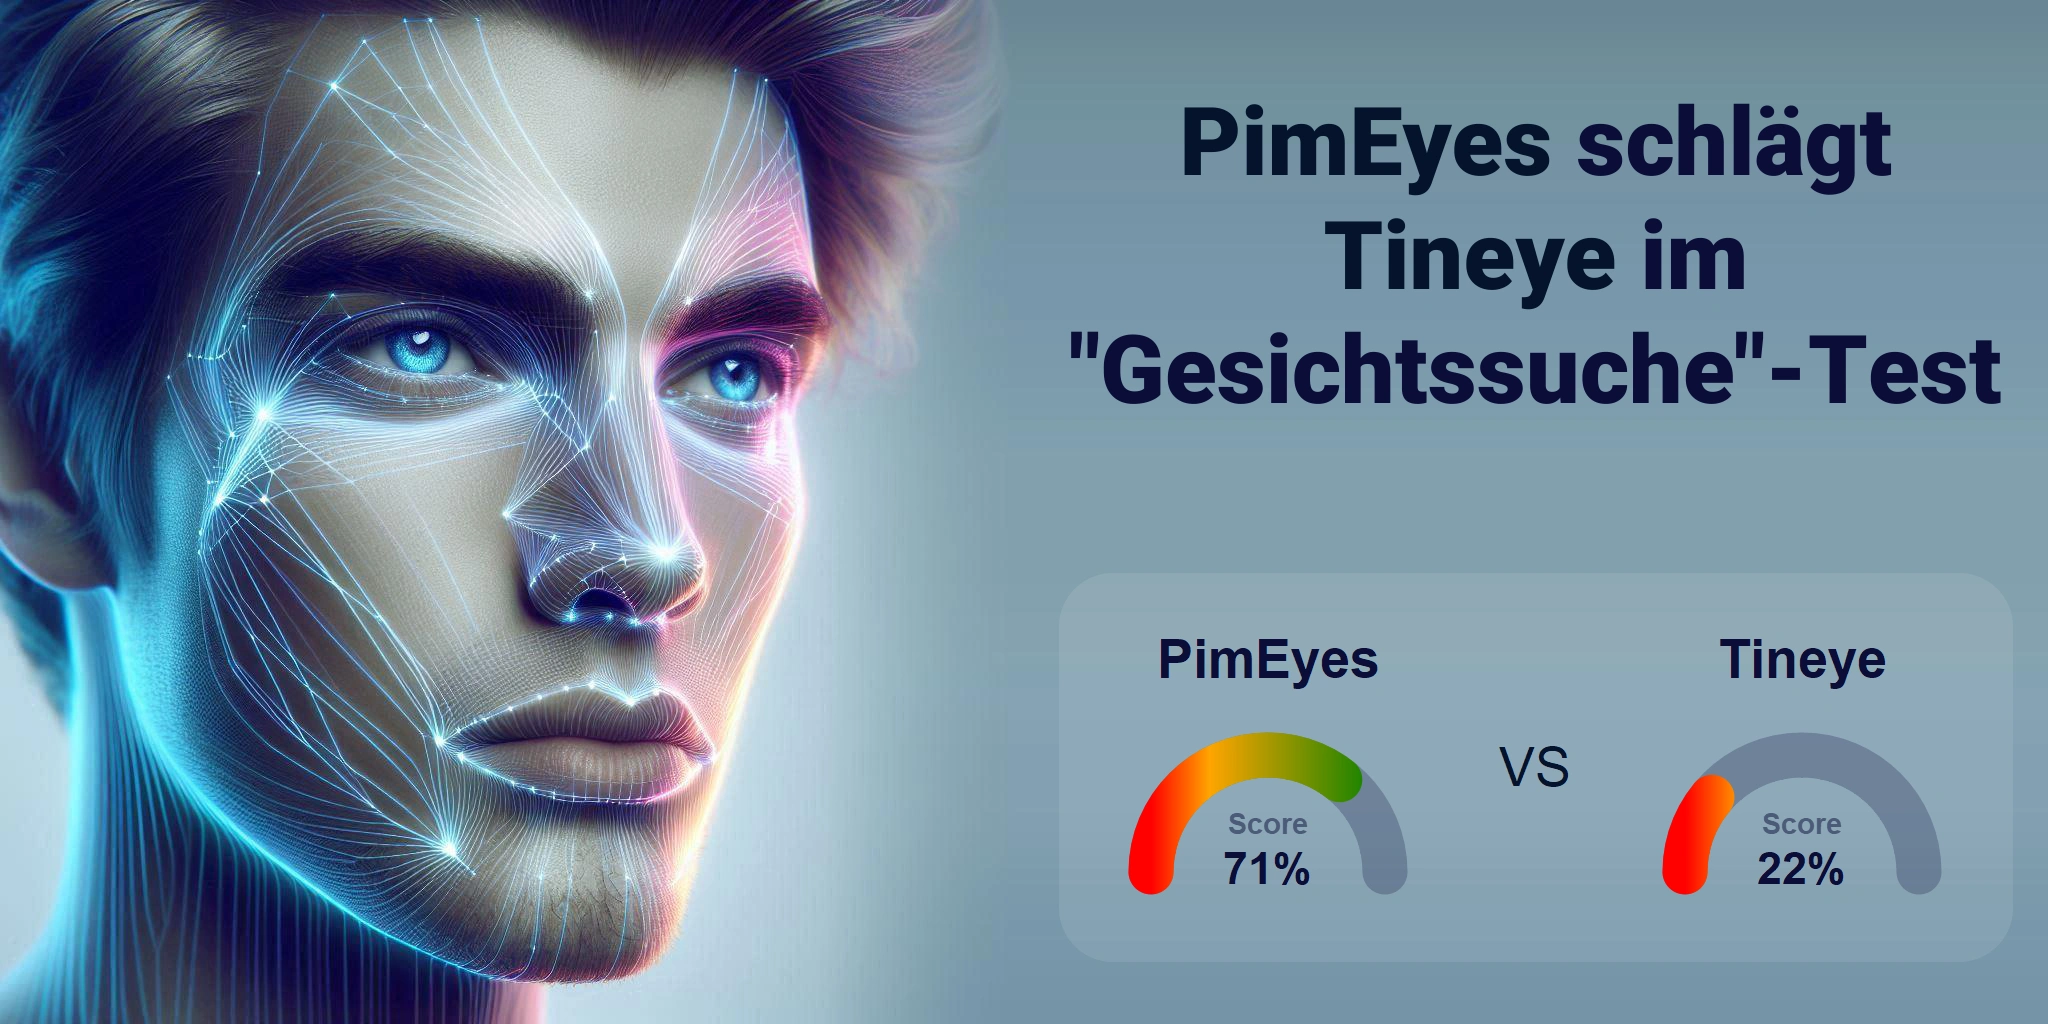 Welcher ist besser für die Gesichtssuche: <br>PimEyes oder Tineye?